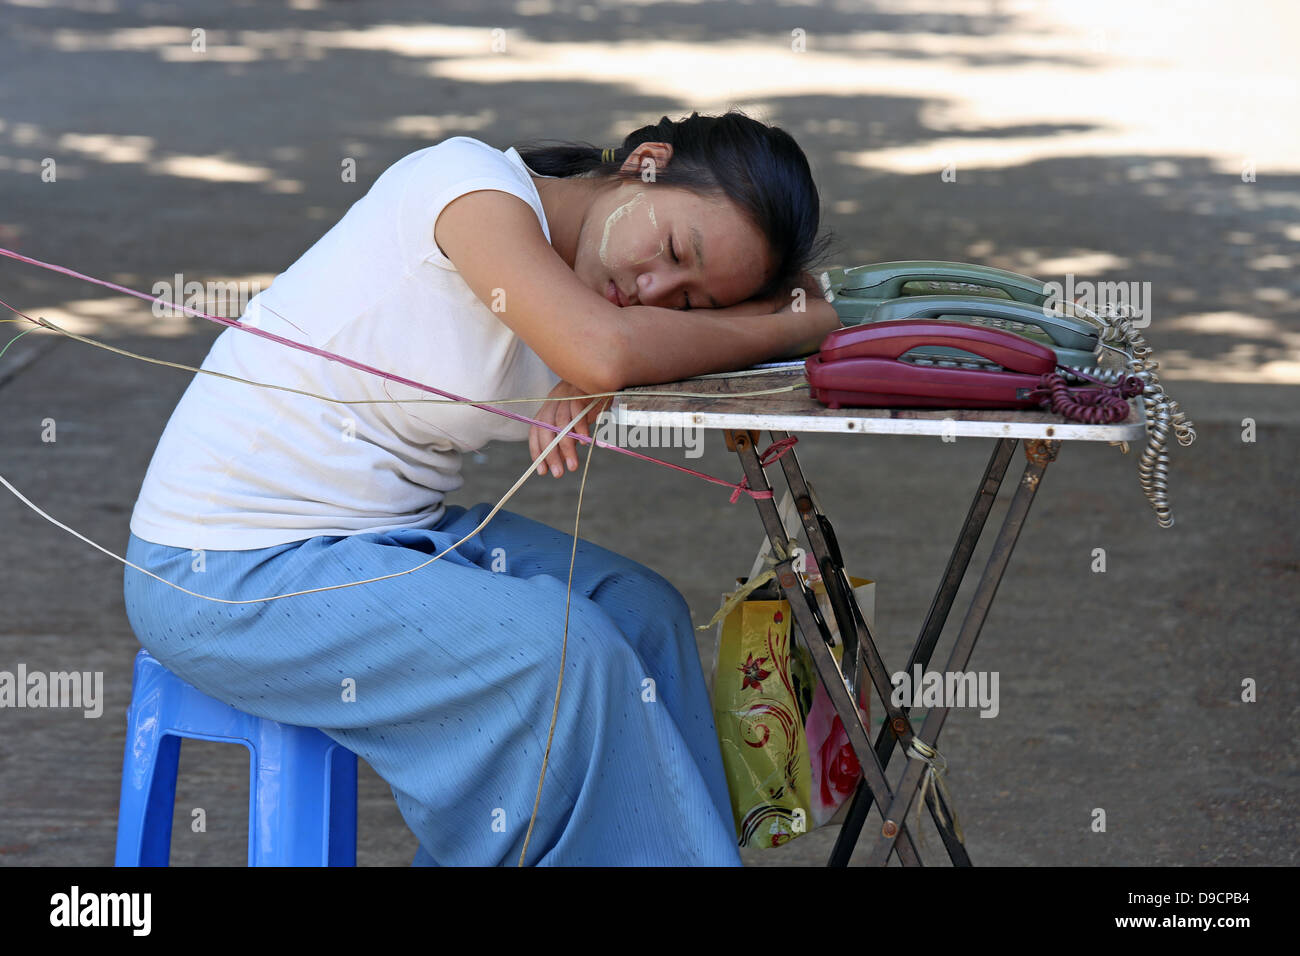 Las hembras jóvenes de operador telefónico dormido durante la presentación de tabla de teléfonos públicos en las calles de Yangon (Rangún) Myanmar, Sudeste de Asia Foto de stock